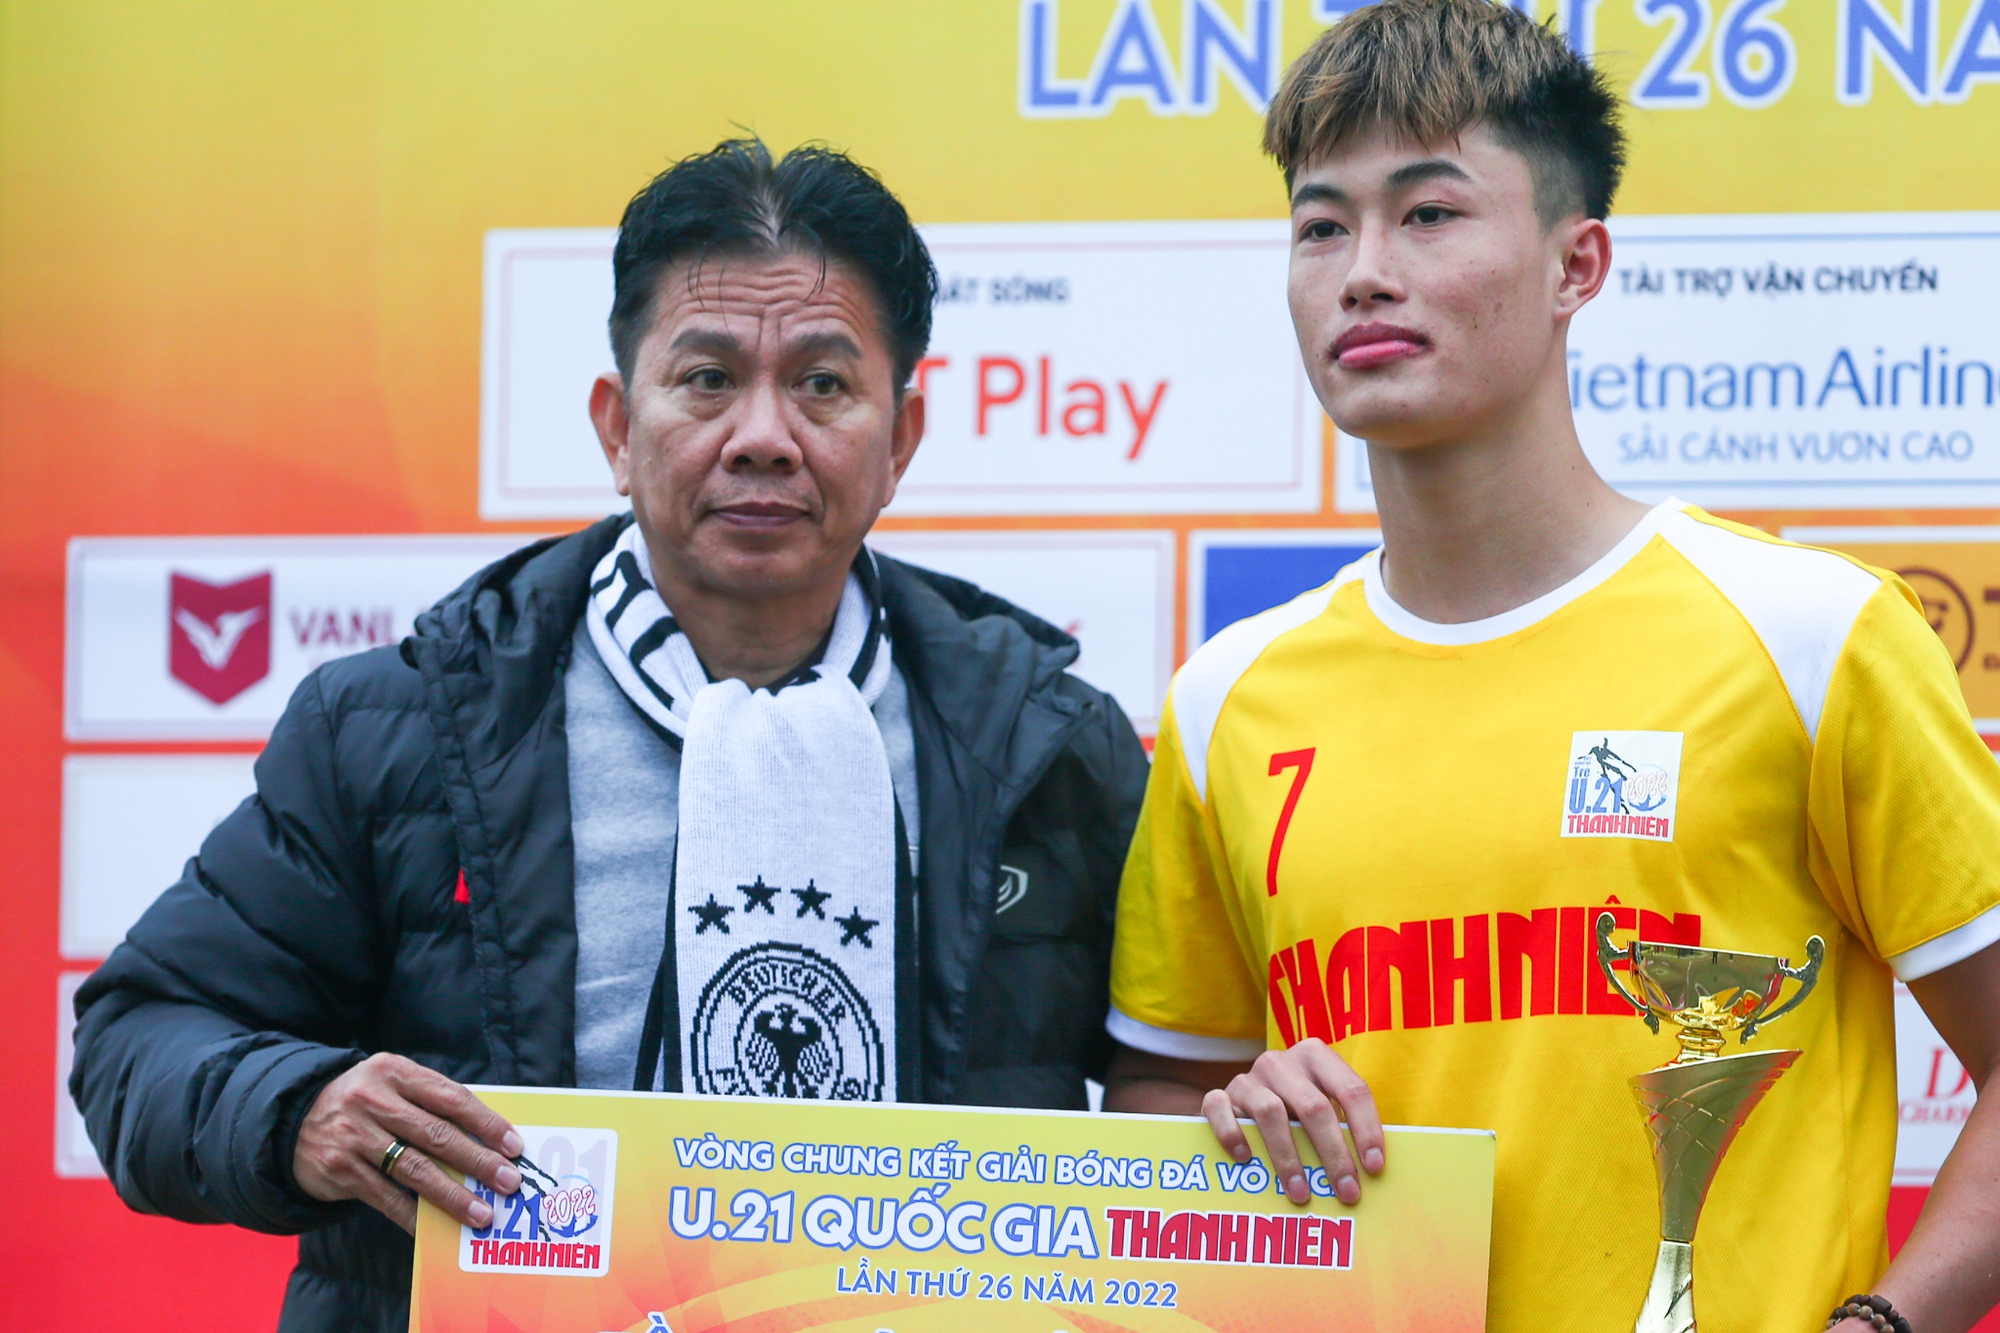 HLV trưởng U20 Việt Nam lo lắng về vị trí thủ môn - Ảnh 1.